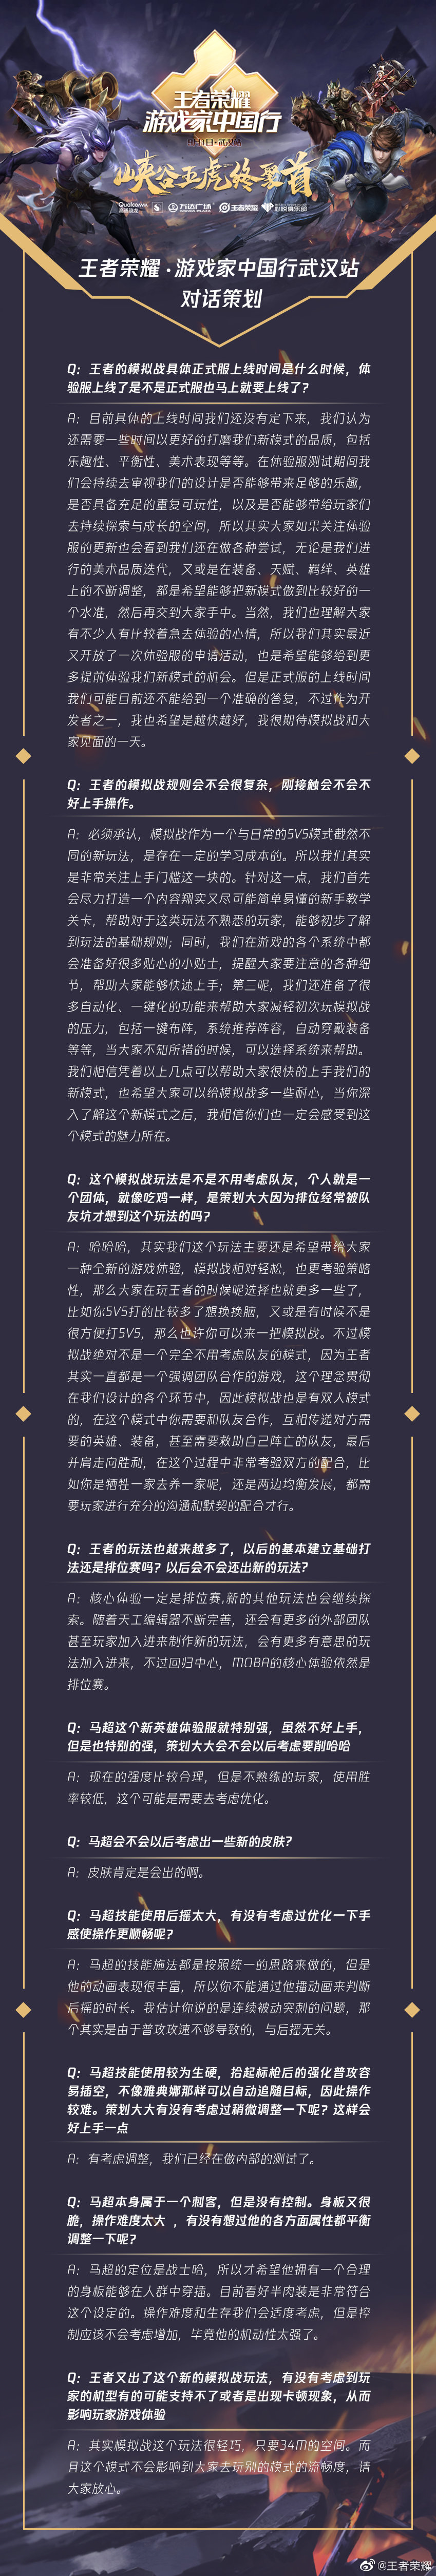 王者荣耀·游戏家中国行武汉站对话策划